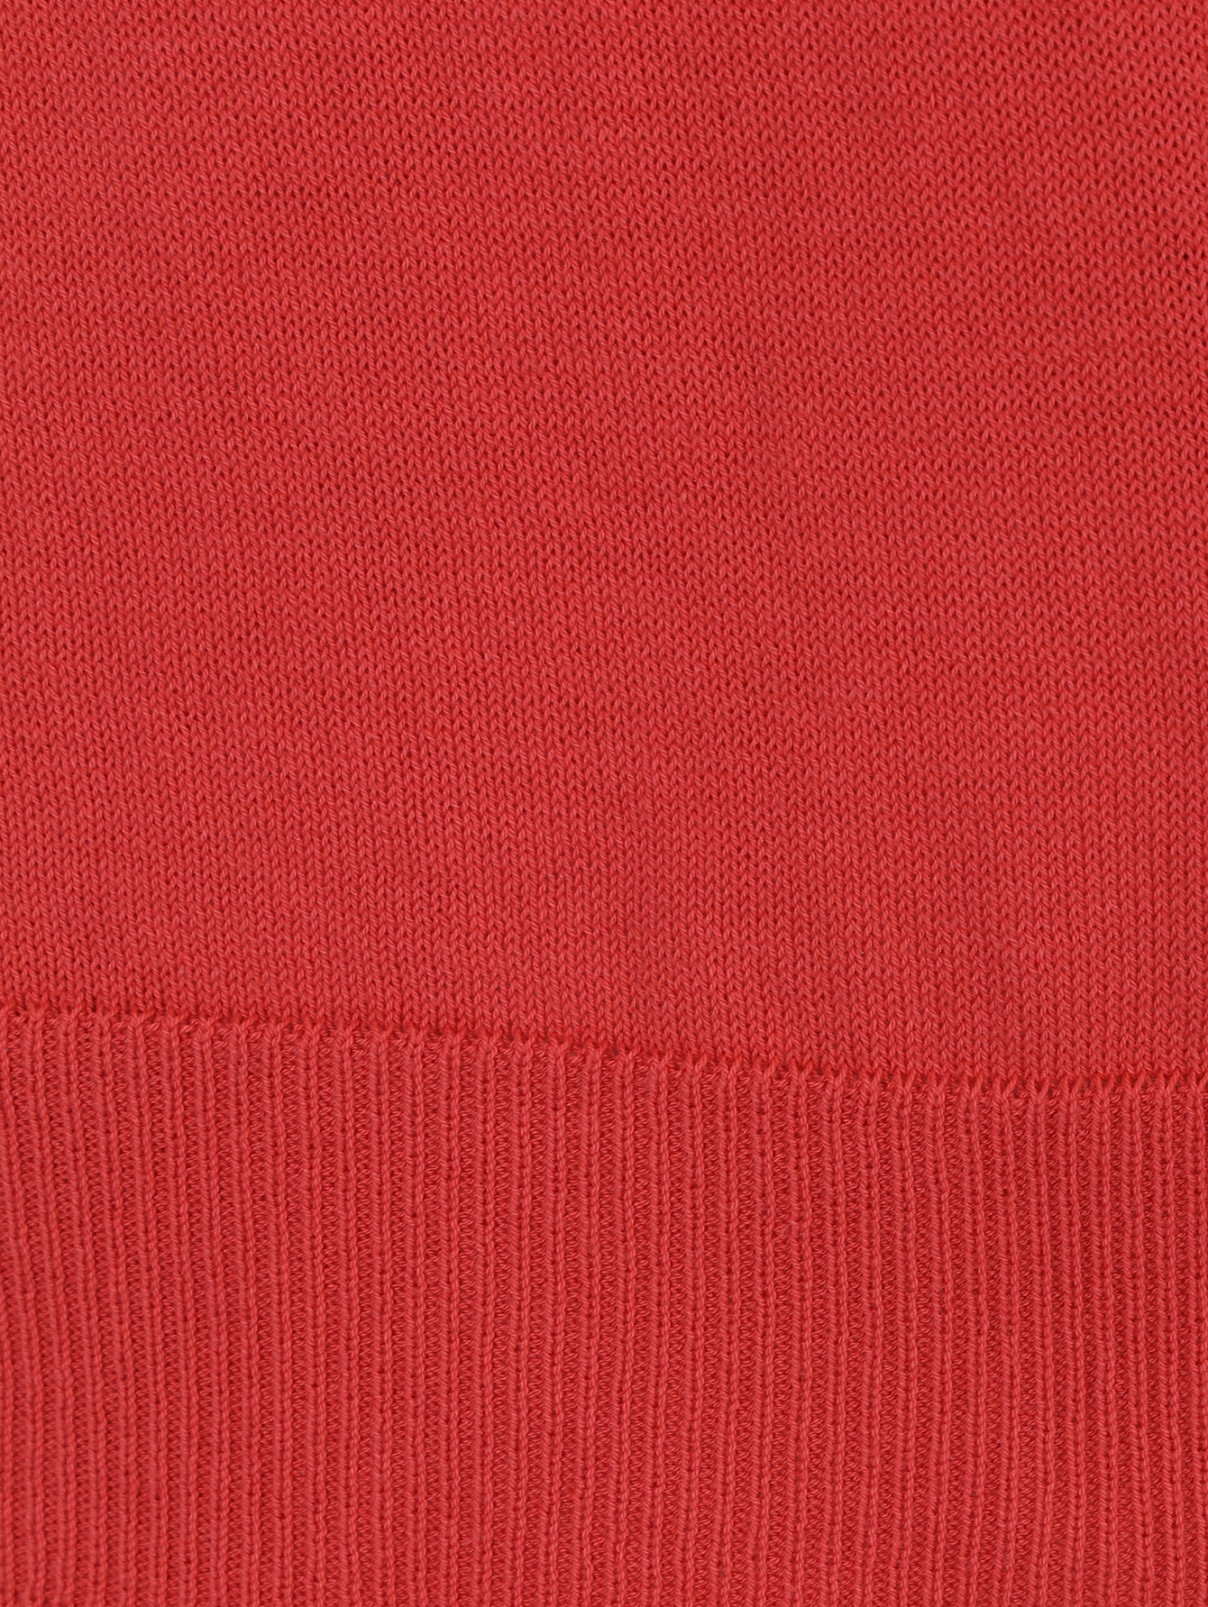 Кардиган из хлопка Parronchi Cashmere  –  Деталь1  – Цвет:  Оранжевый